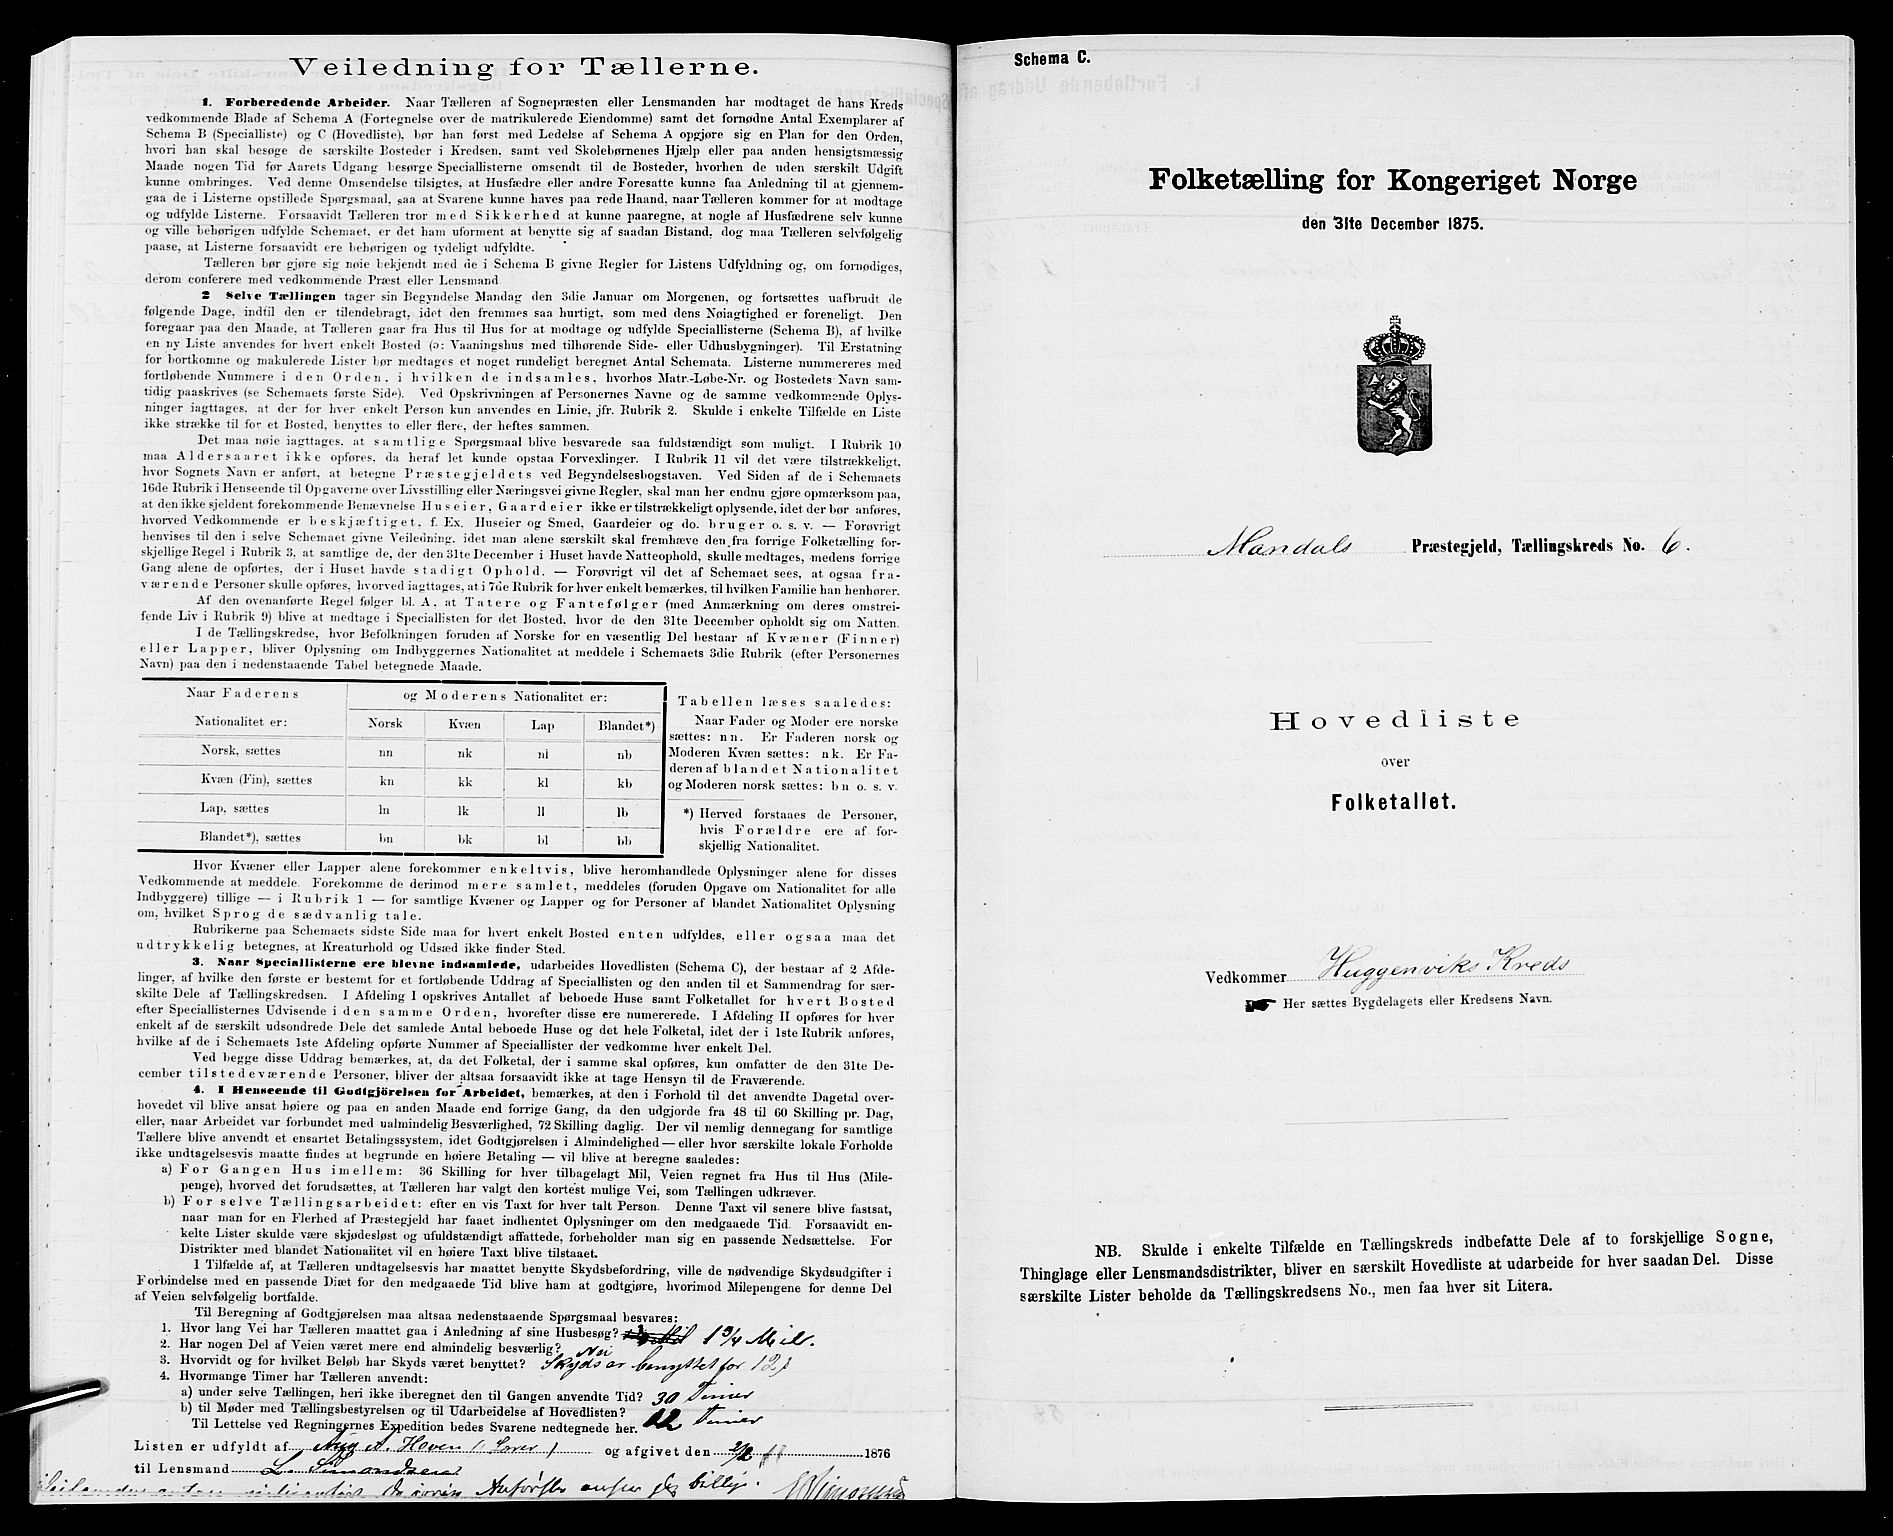 SAK, Folketelling 1875 for 1019L Mandal prestegjeld, Halse sokn og Harkmark sokn, 1875, s. 41